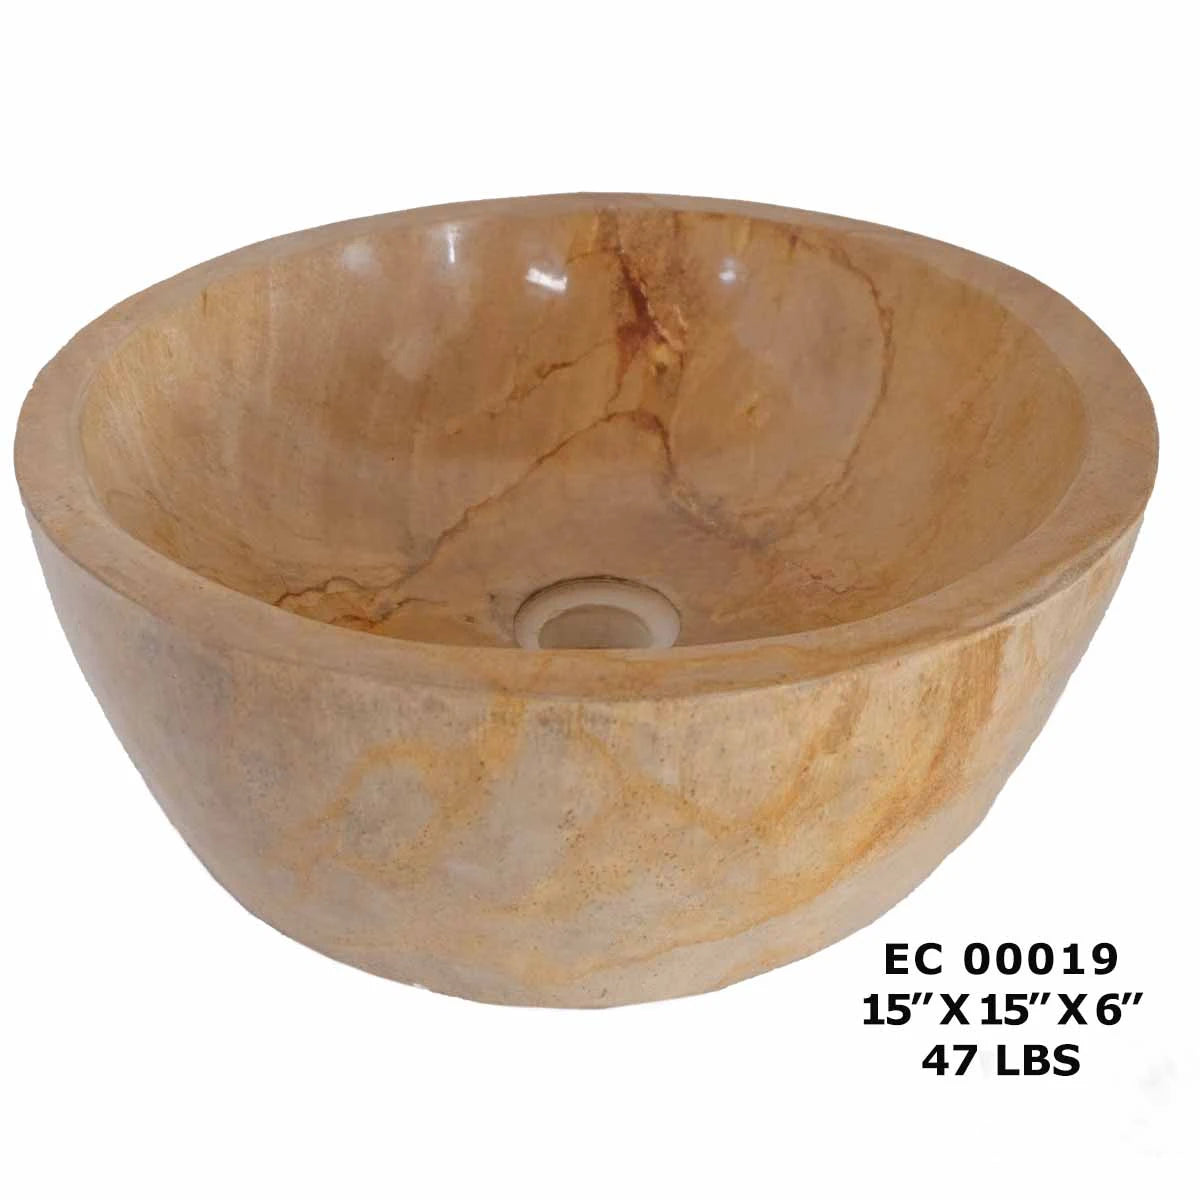 Petrified Wood Sink Bowl, Stone Bathroom Basin Sink EC00019